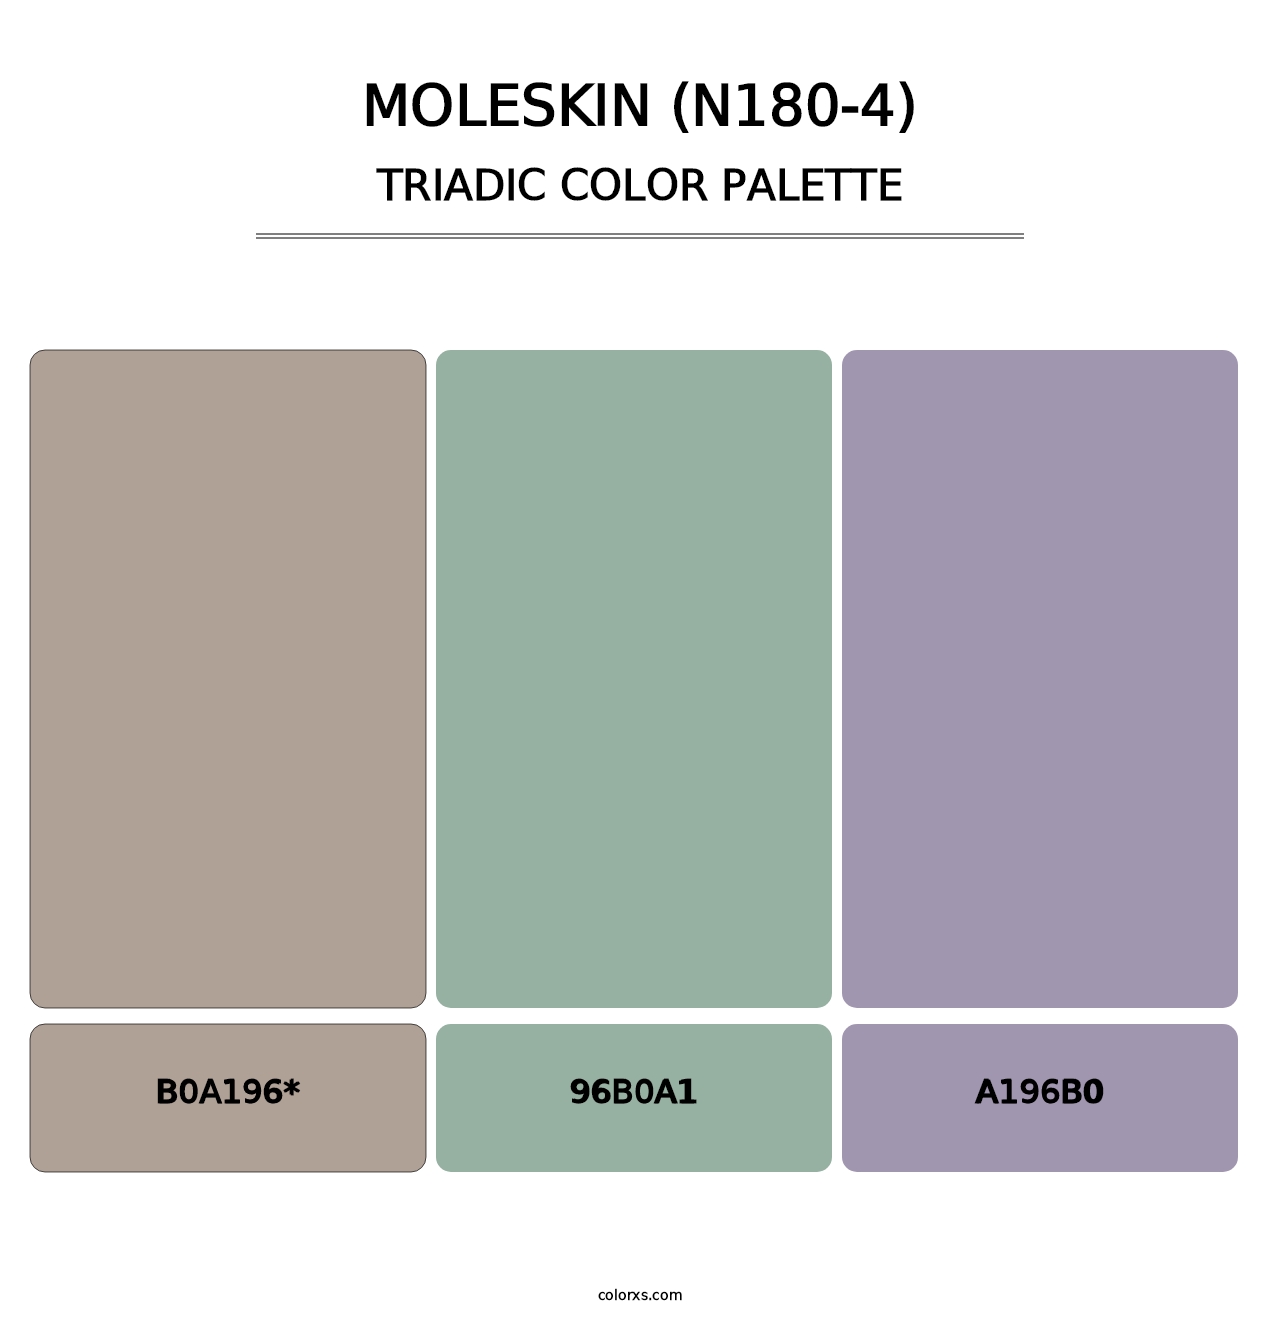 Moleskin (N180-4) - Triadic Color Palette